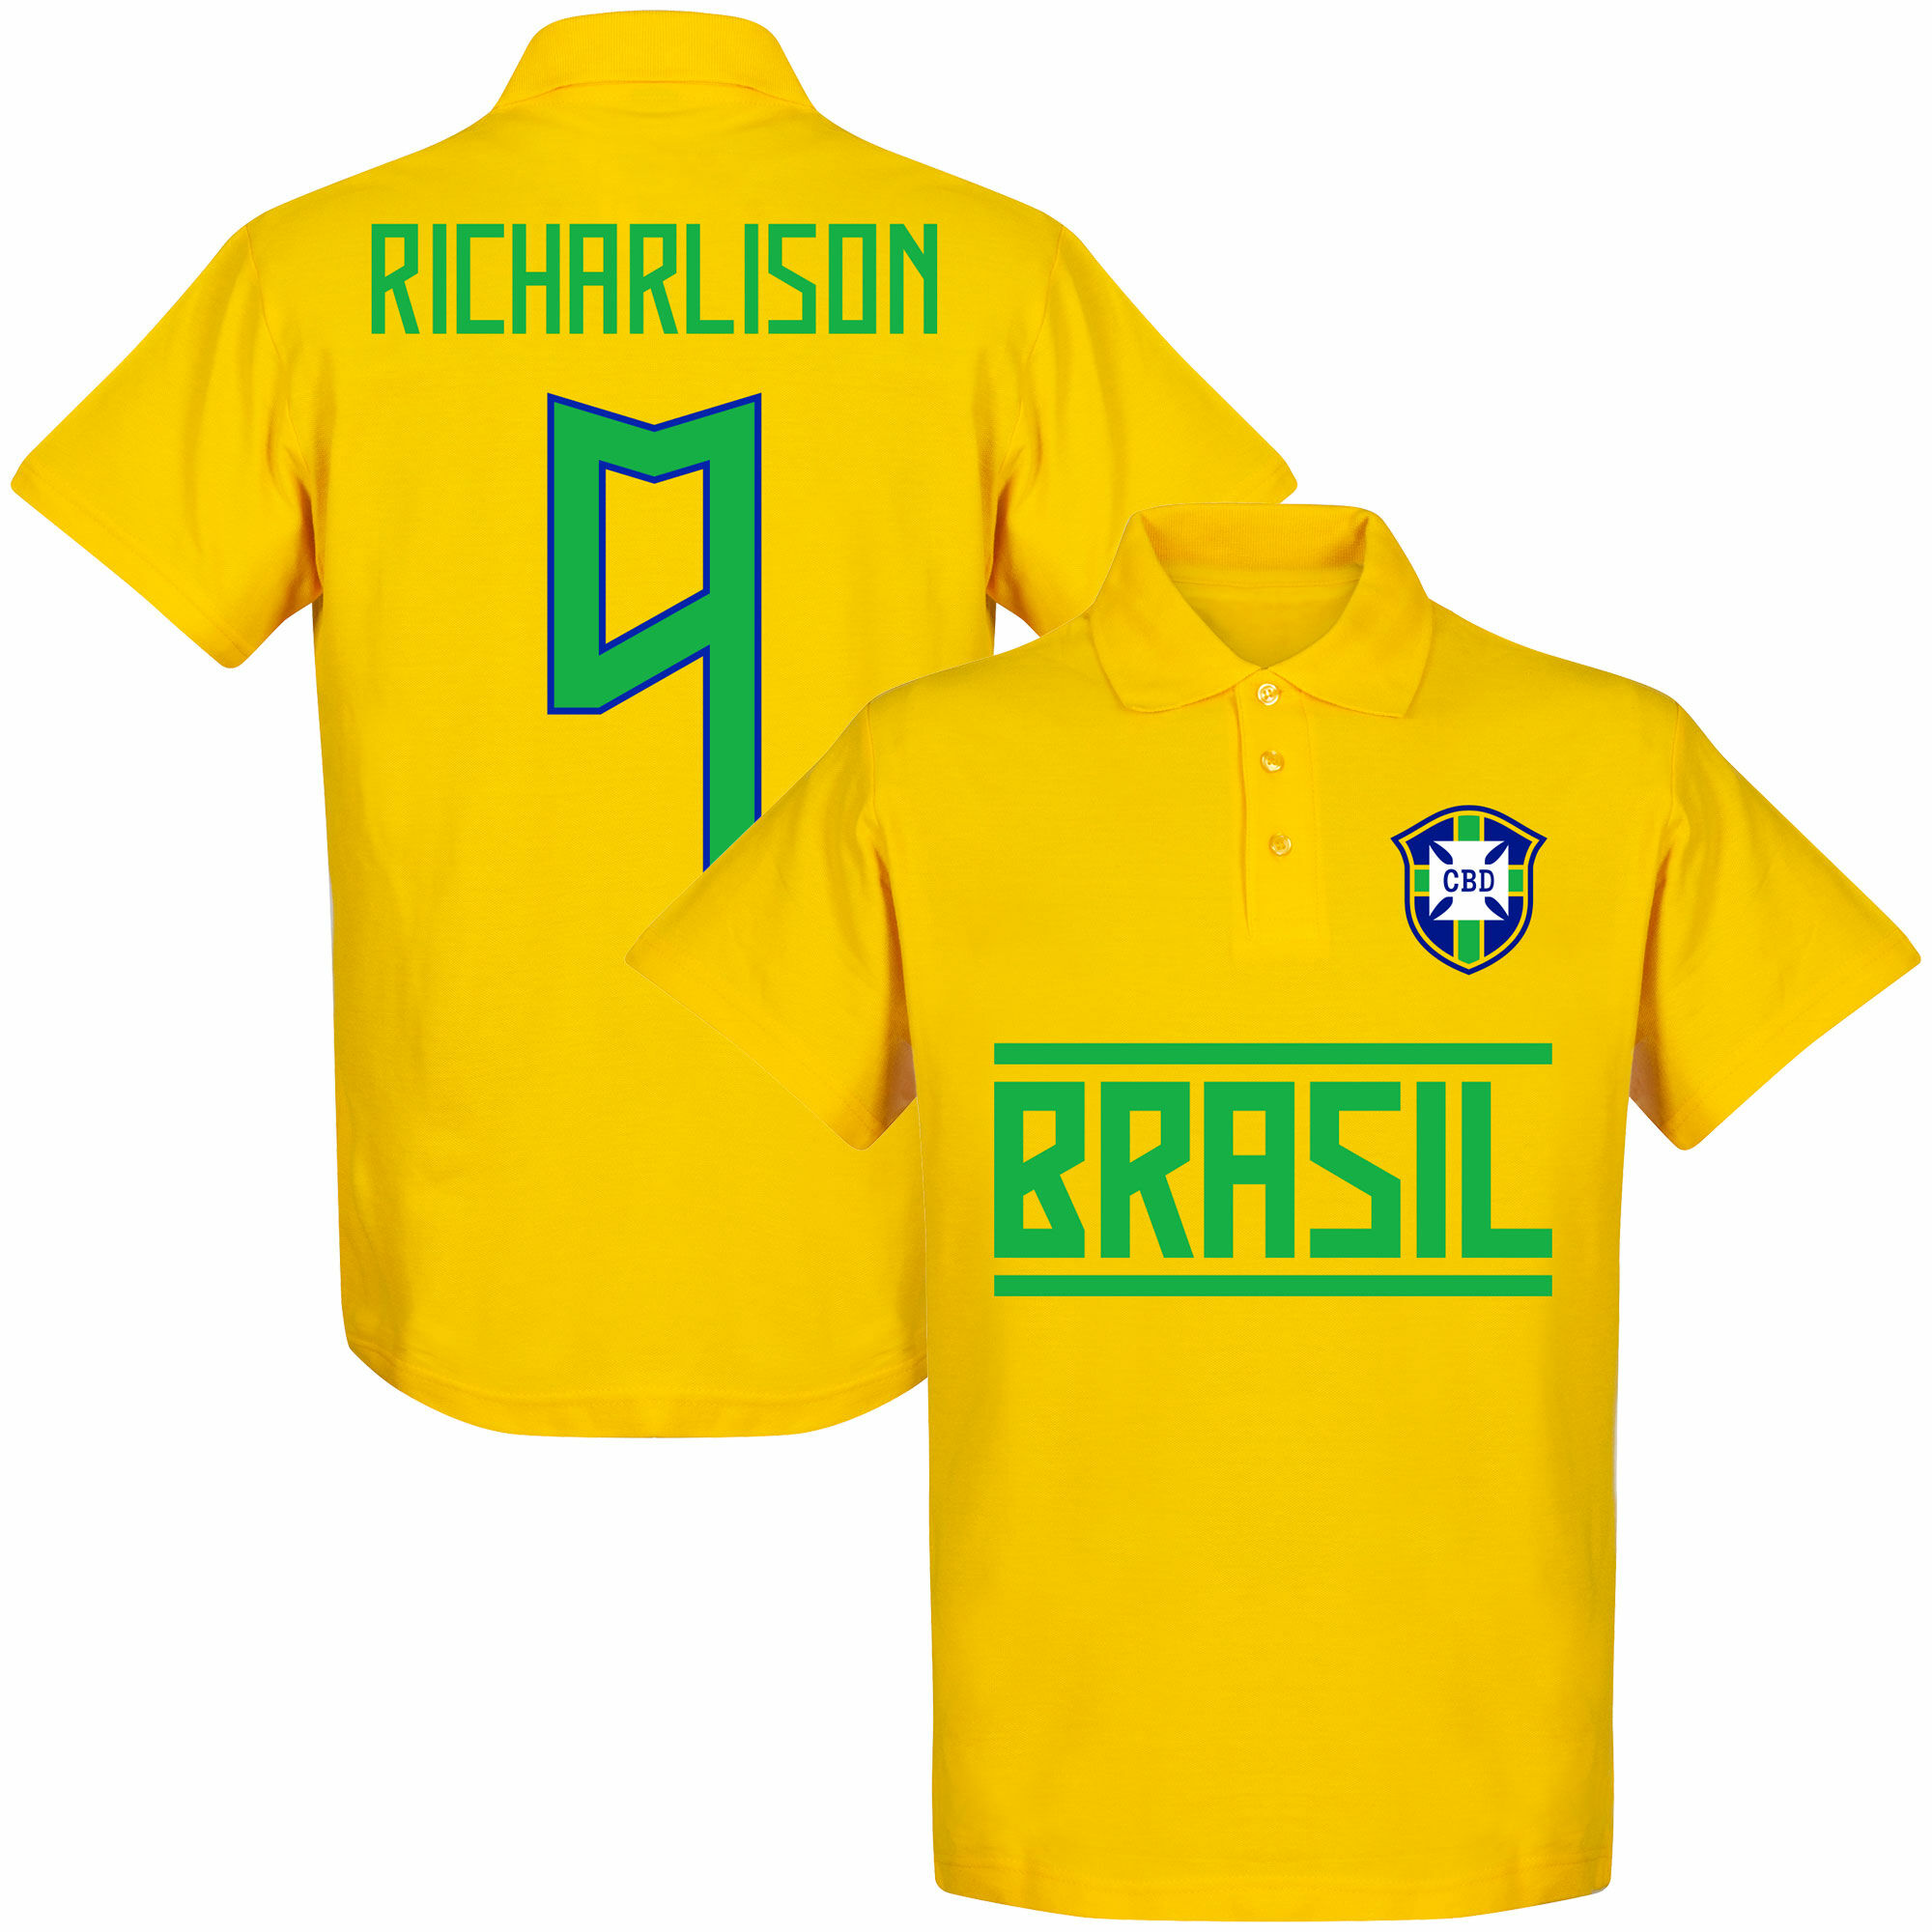 Brazílie - Tričko s límečkem - Richarlison, žluté, číslo 9